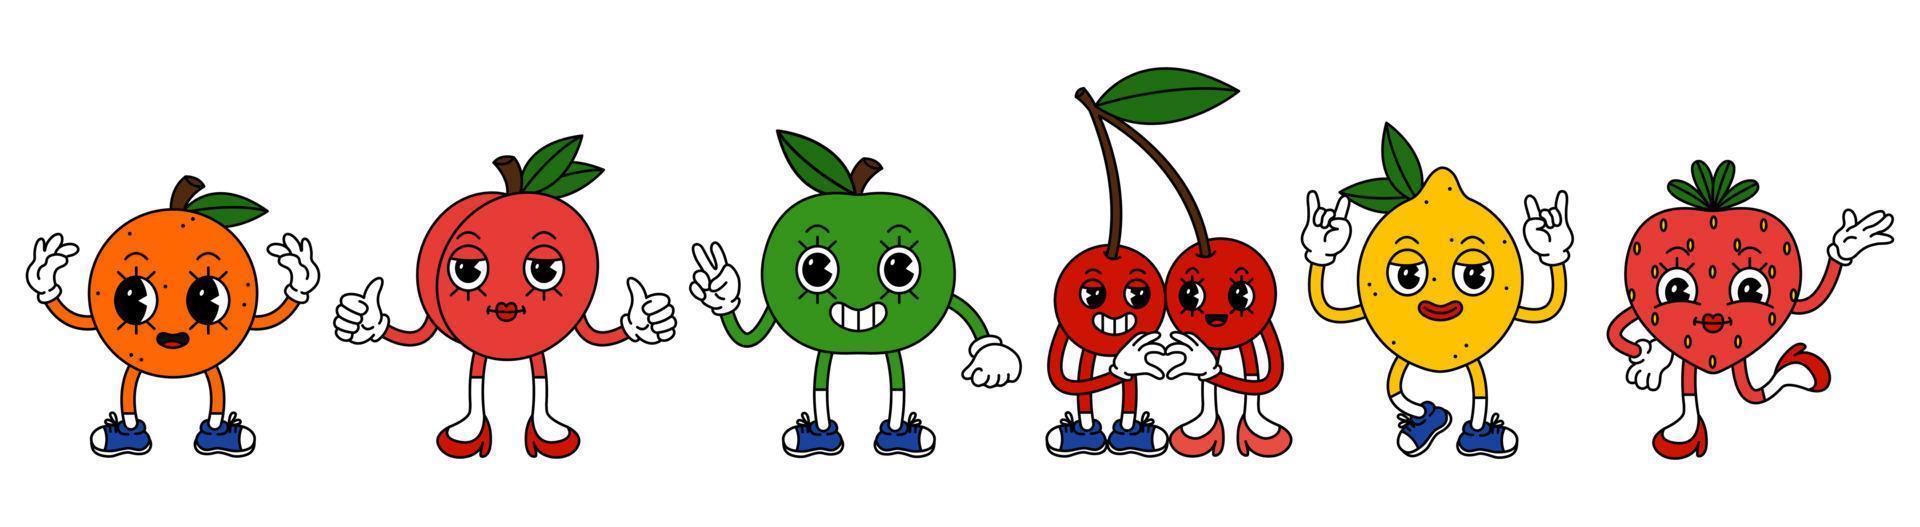 einstellen von komisch Früchte Zeichen im modisch retro Karikatur Stil. Vektor Illustration von Kirsche, Pfirsich, Erdbeere, orange, Apfel und Zitrone.